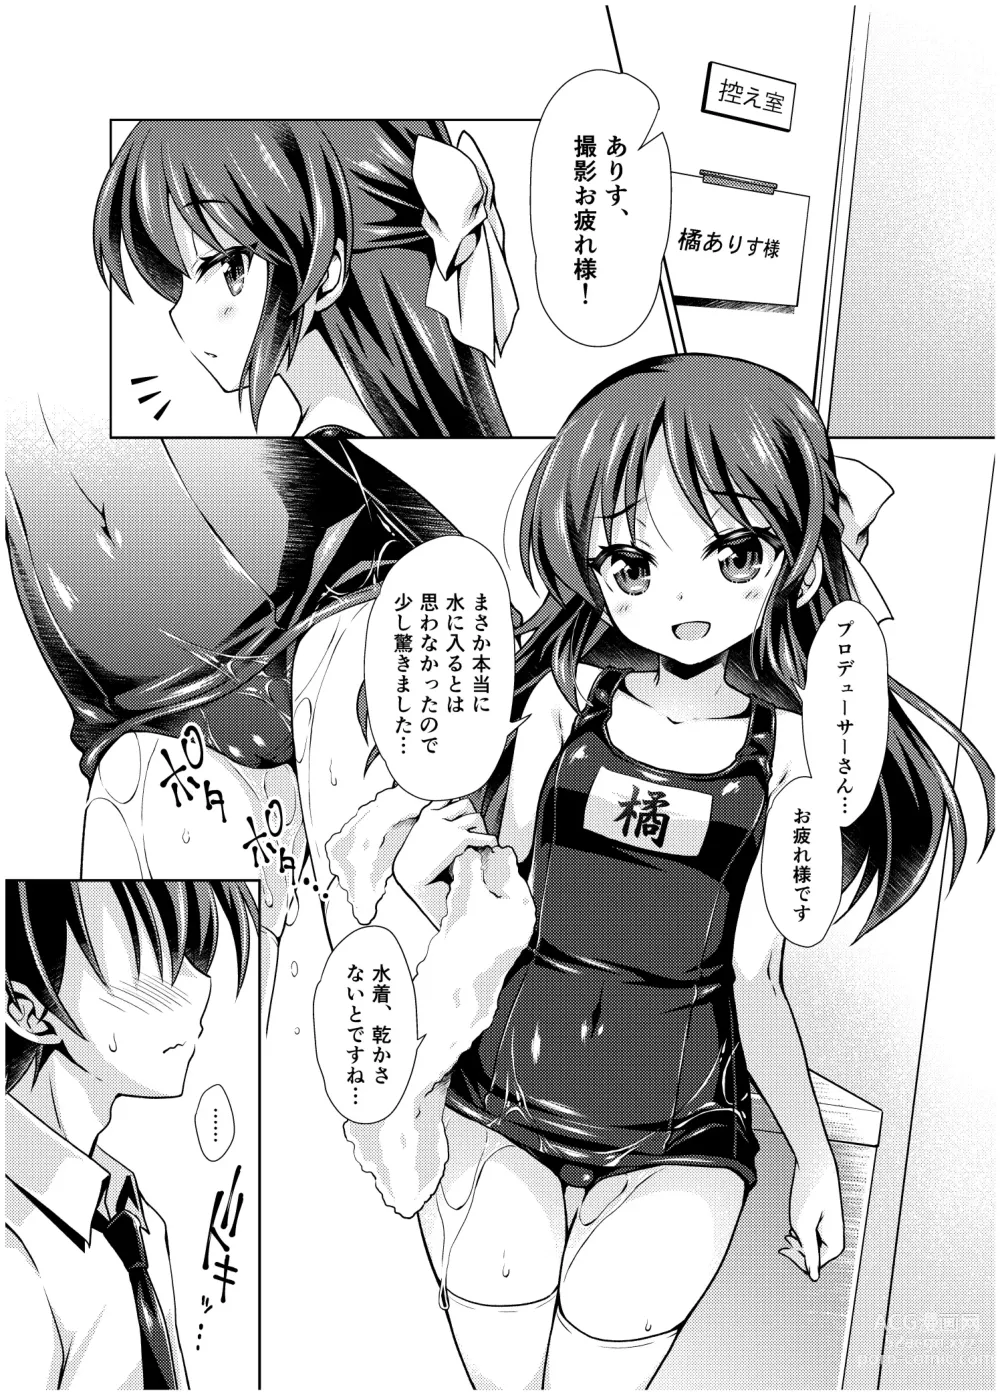 Page 6 of doujinshi Tachibana Arisu no Manga Matome